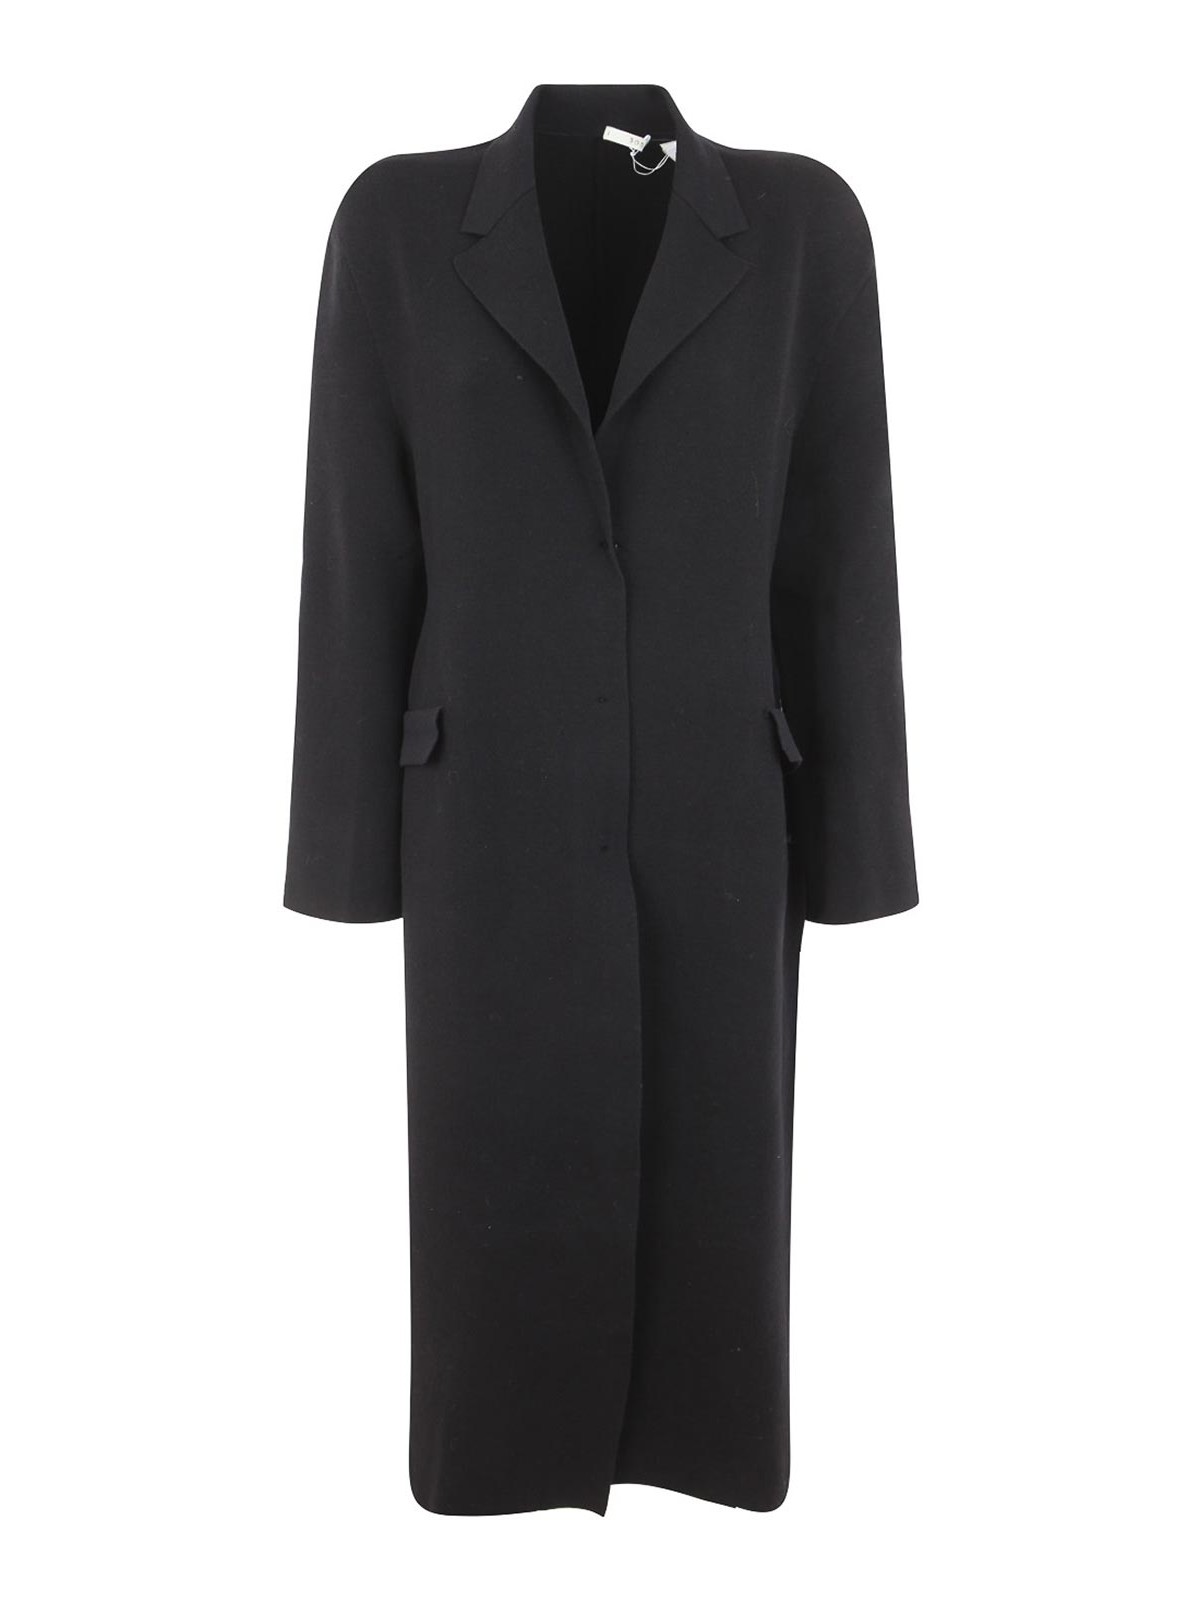 Short coats Boboutic - Classic coat - 4538P4P4 | thebs.com [ikrix.com]